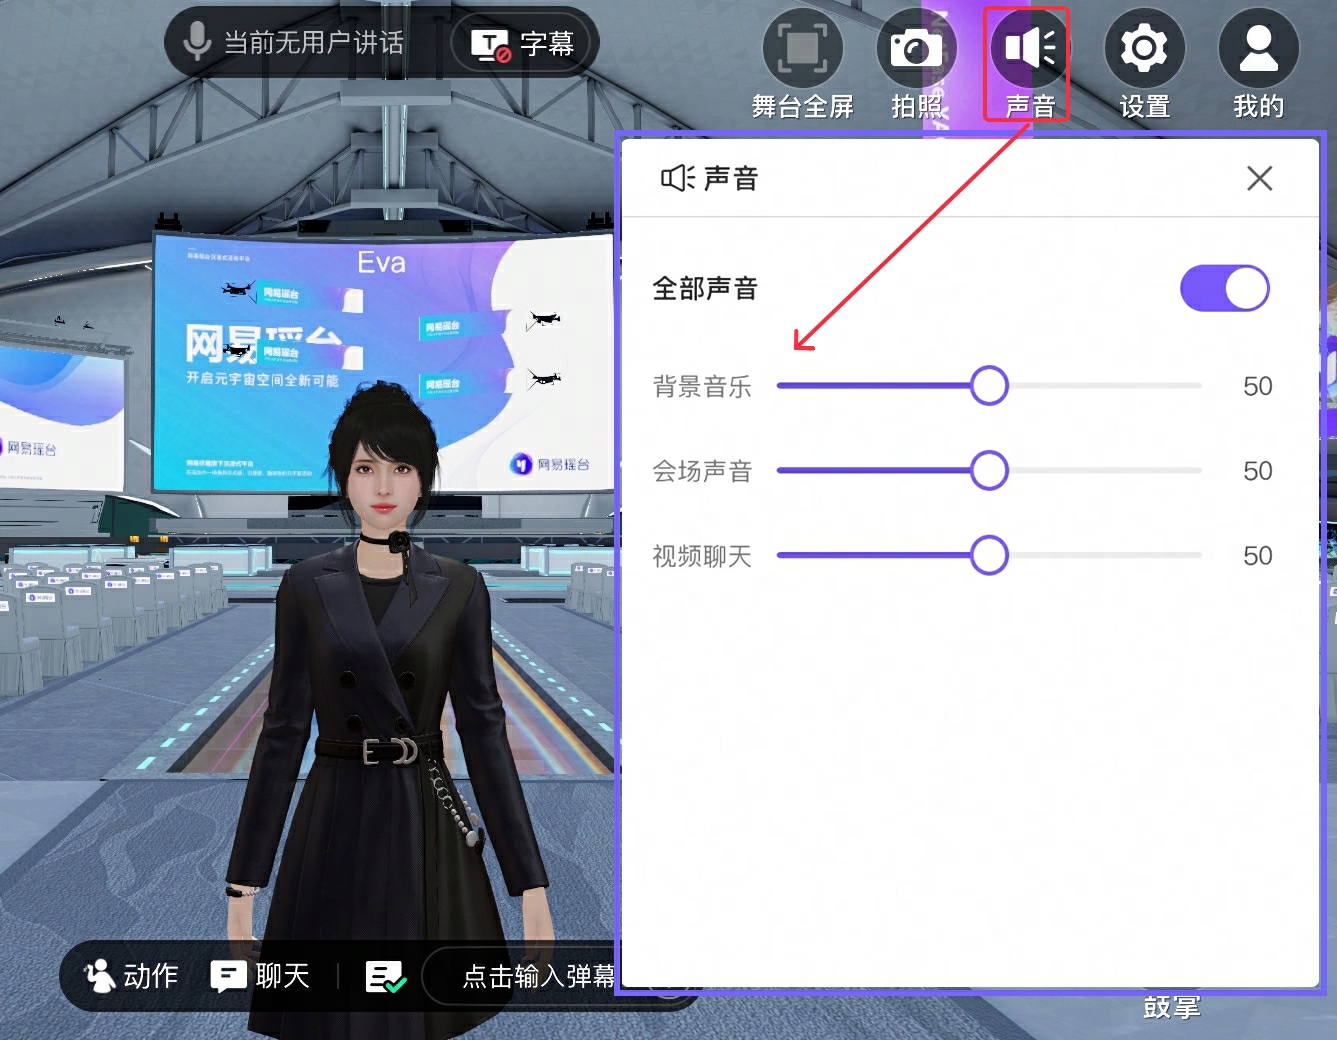 图片展示了一个游戏界面，中间是一位穿黑色服装的虚拟女性角色，背景为未来风格的大厅，右侧有一个角色自定义设置菜单。